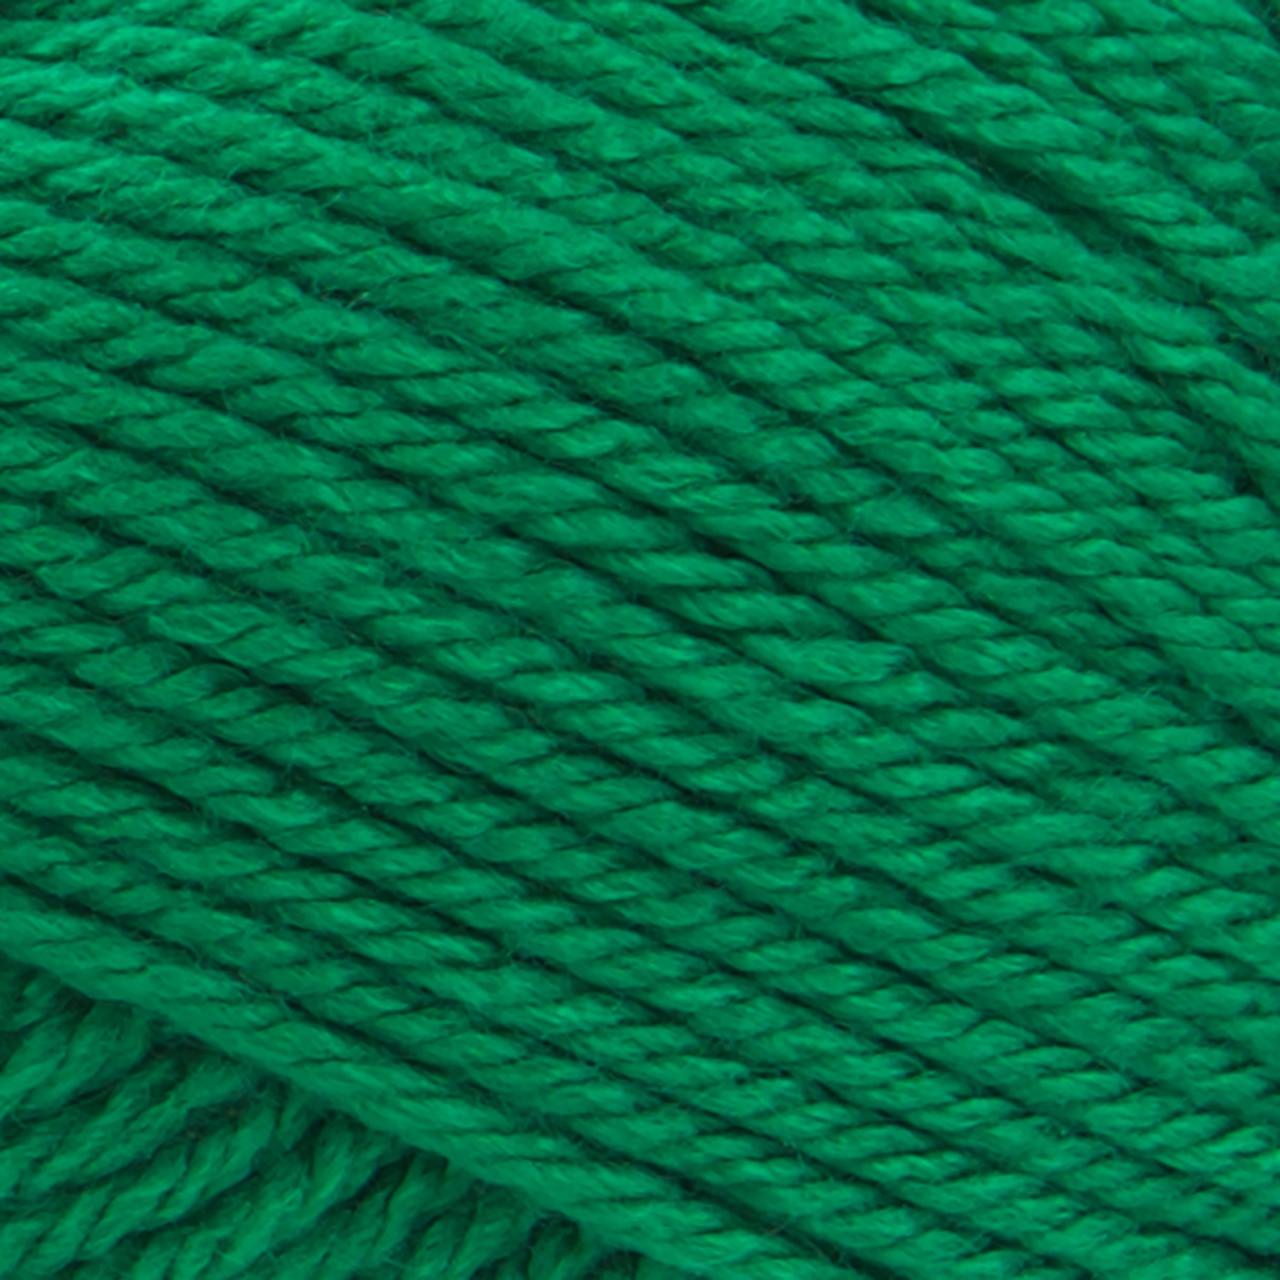 Lion Brand Basic Stitch Anti-Pilling Yarn-Purple